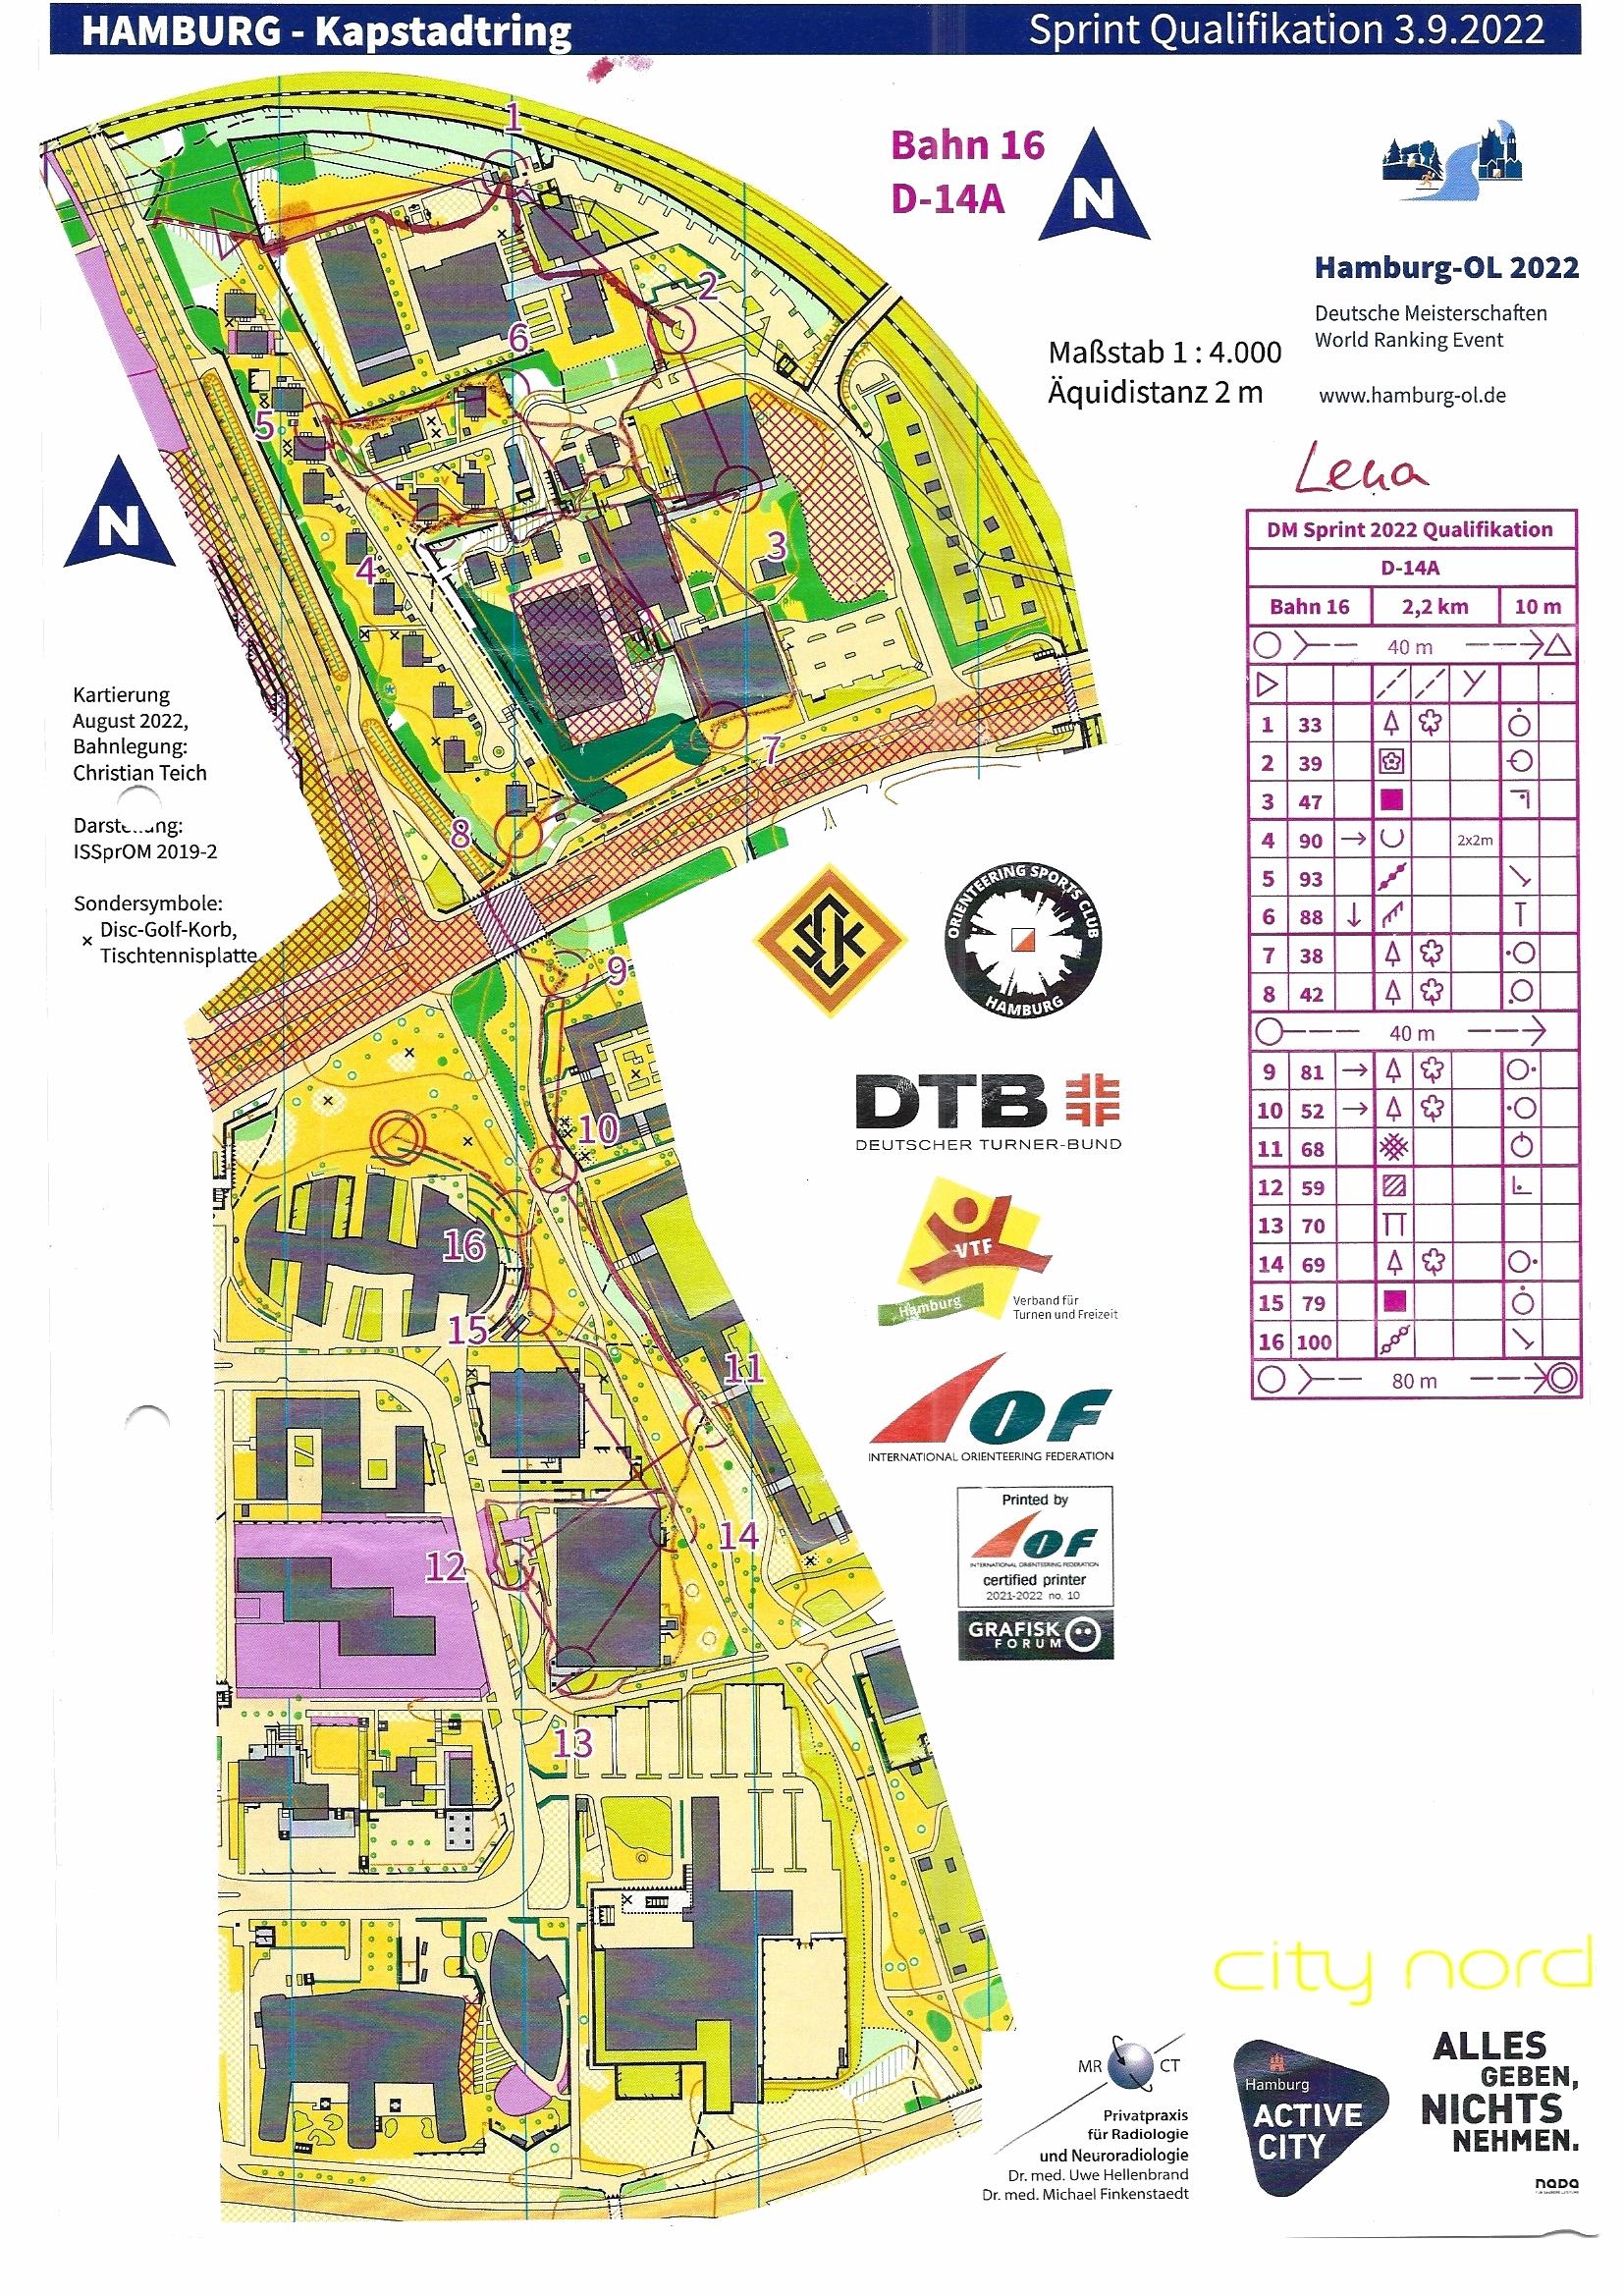 Deutsche Meisterschaften Sprint 2022- Quali (03/09/2022)